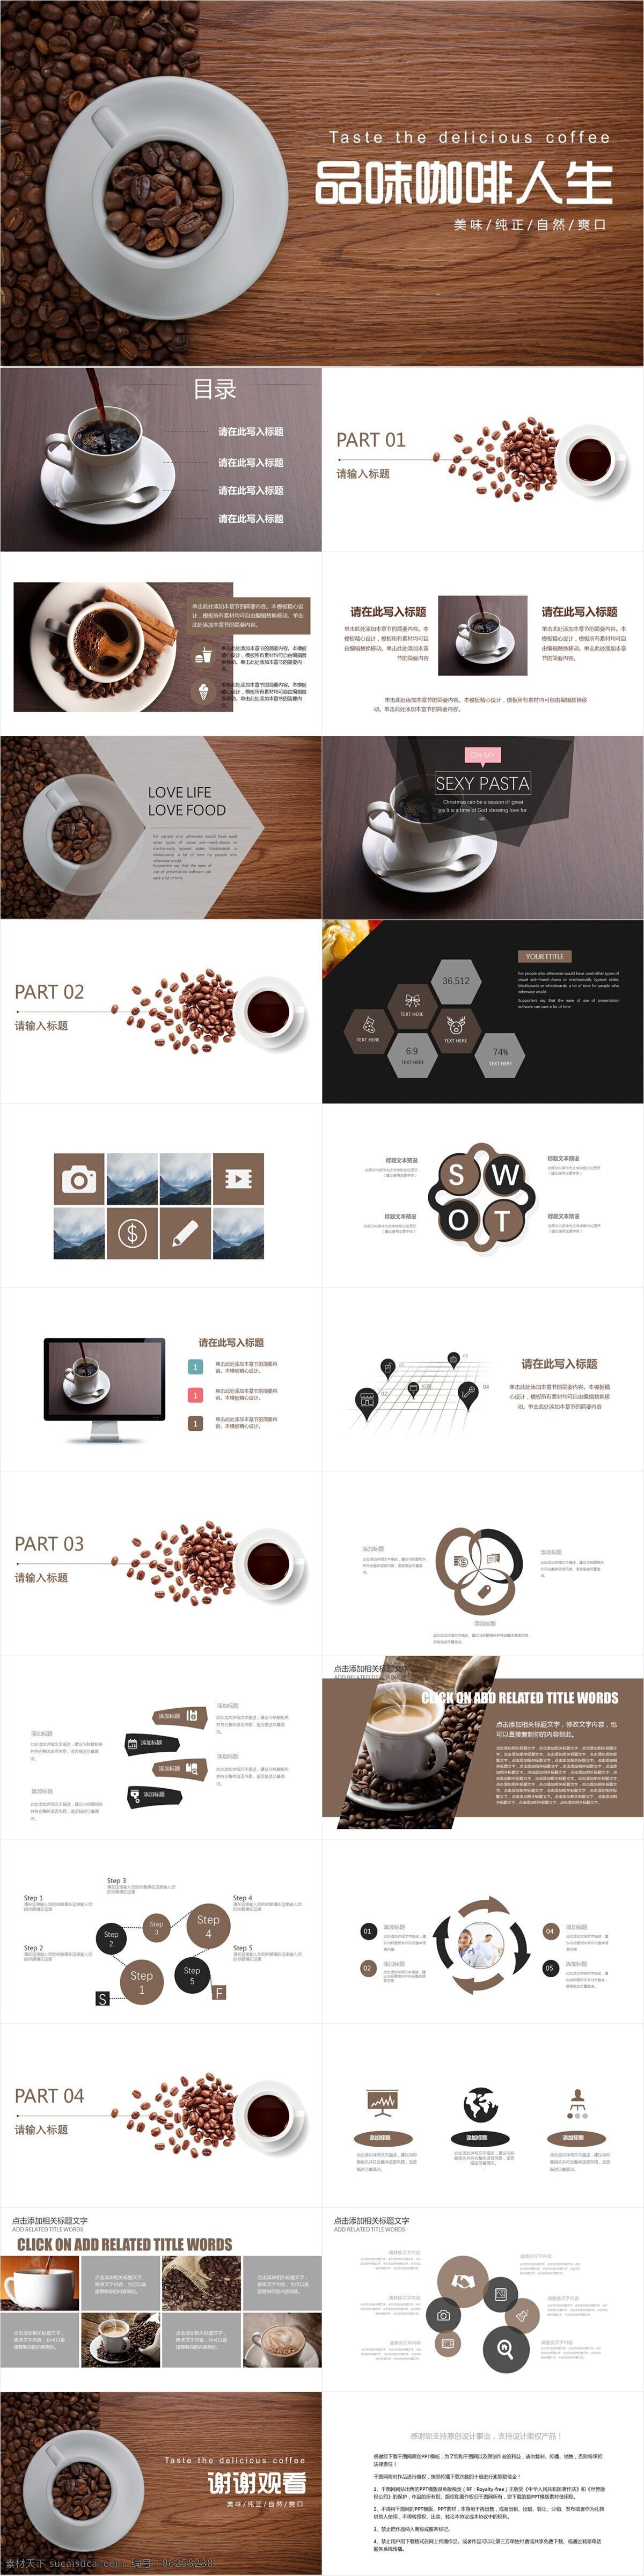 创意 品味 咖啡 人生 企业 宣传 模板 画册 企业宣传 企业简介 品味咖啡人生 产品介绍 商务合作